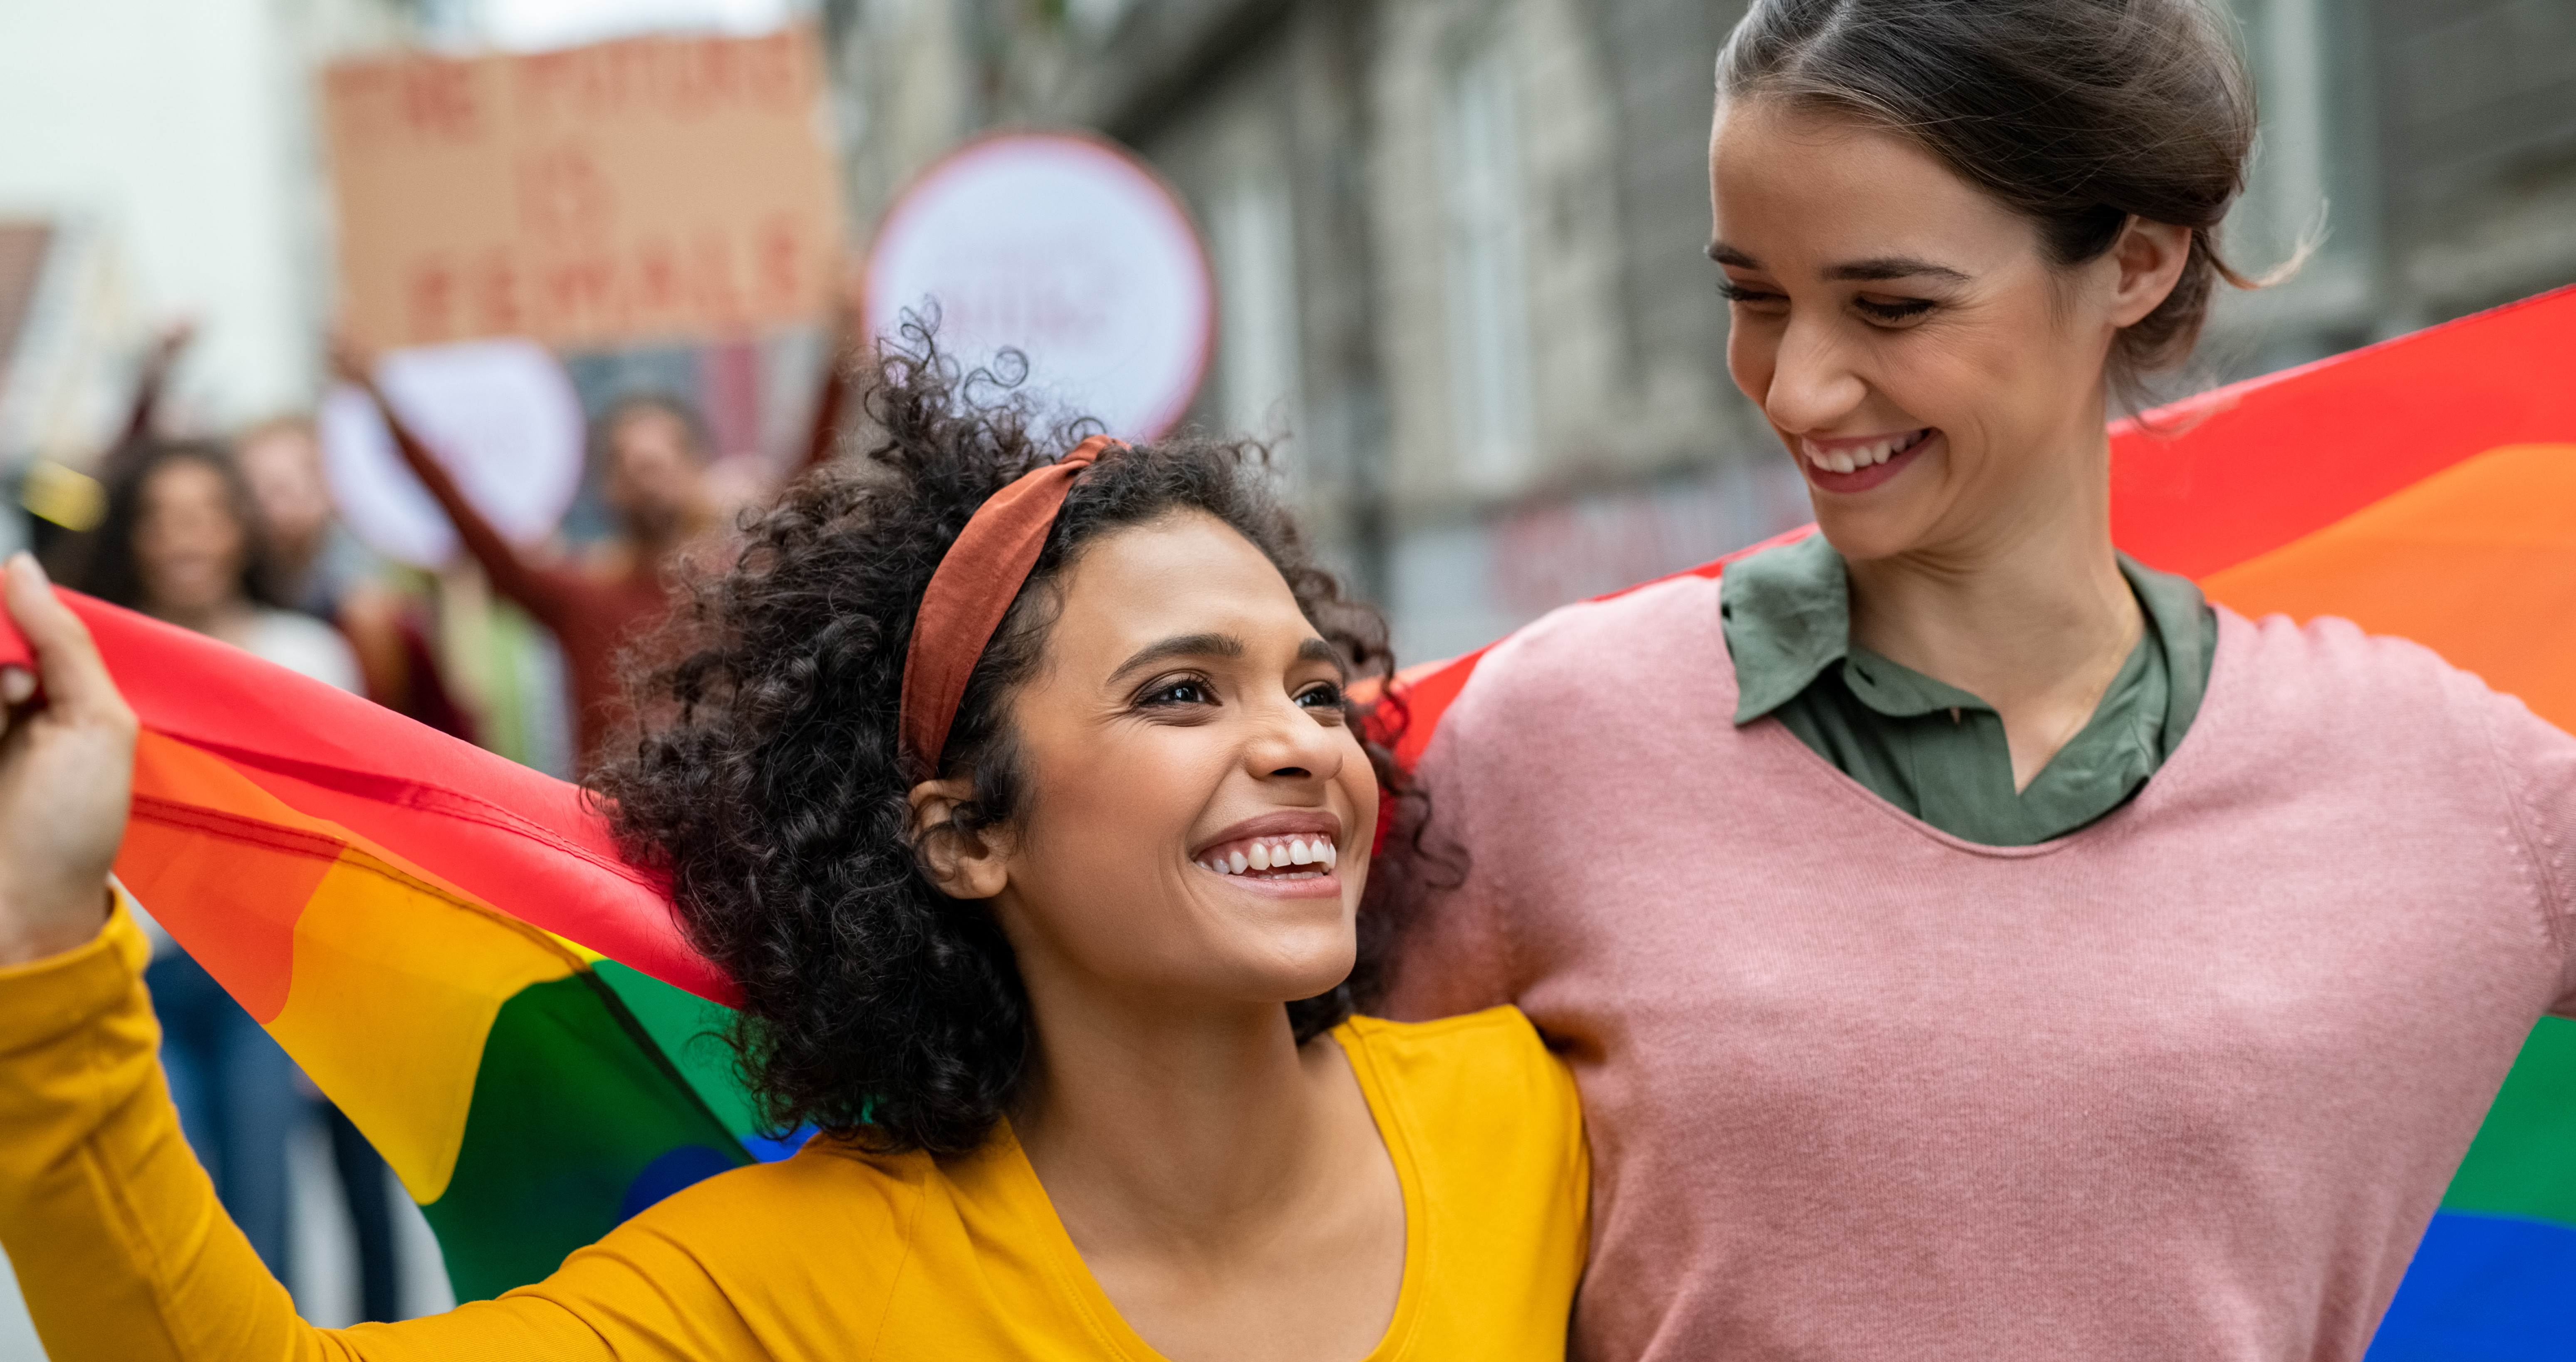 Zwei lächelnde Frauen stehen Arm in Arm an einem belebten Ort und halten eine Regenbogenfahne in den Händen. Ridofranz via Getty Images